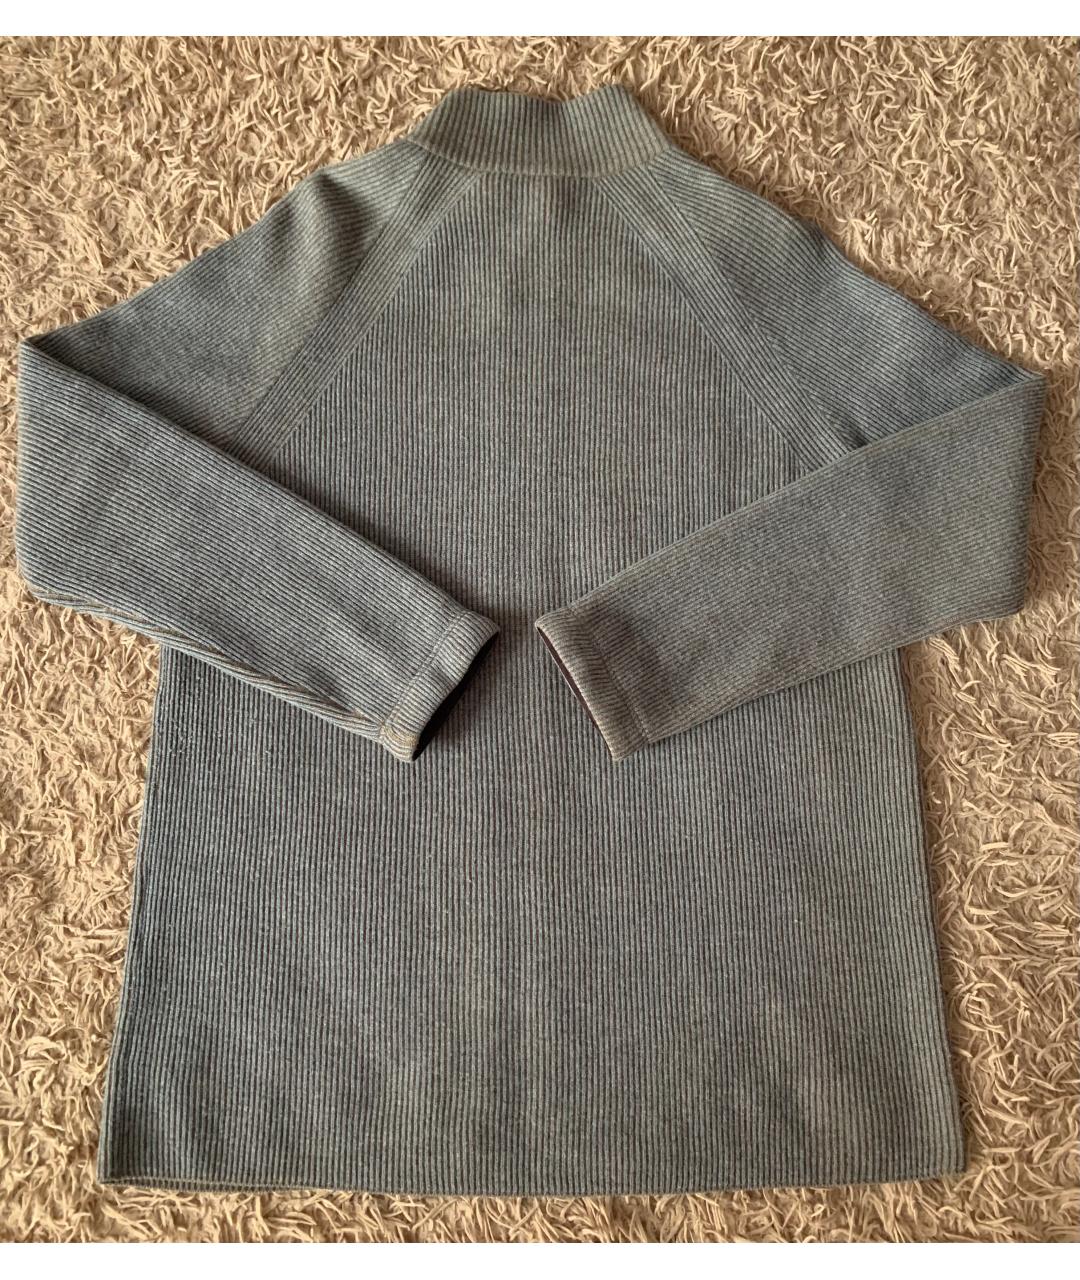 LOUIS VUITTON PRE-OWNED Серый шерстяной джемпер / свитер, фото 2